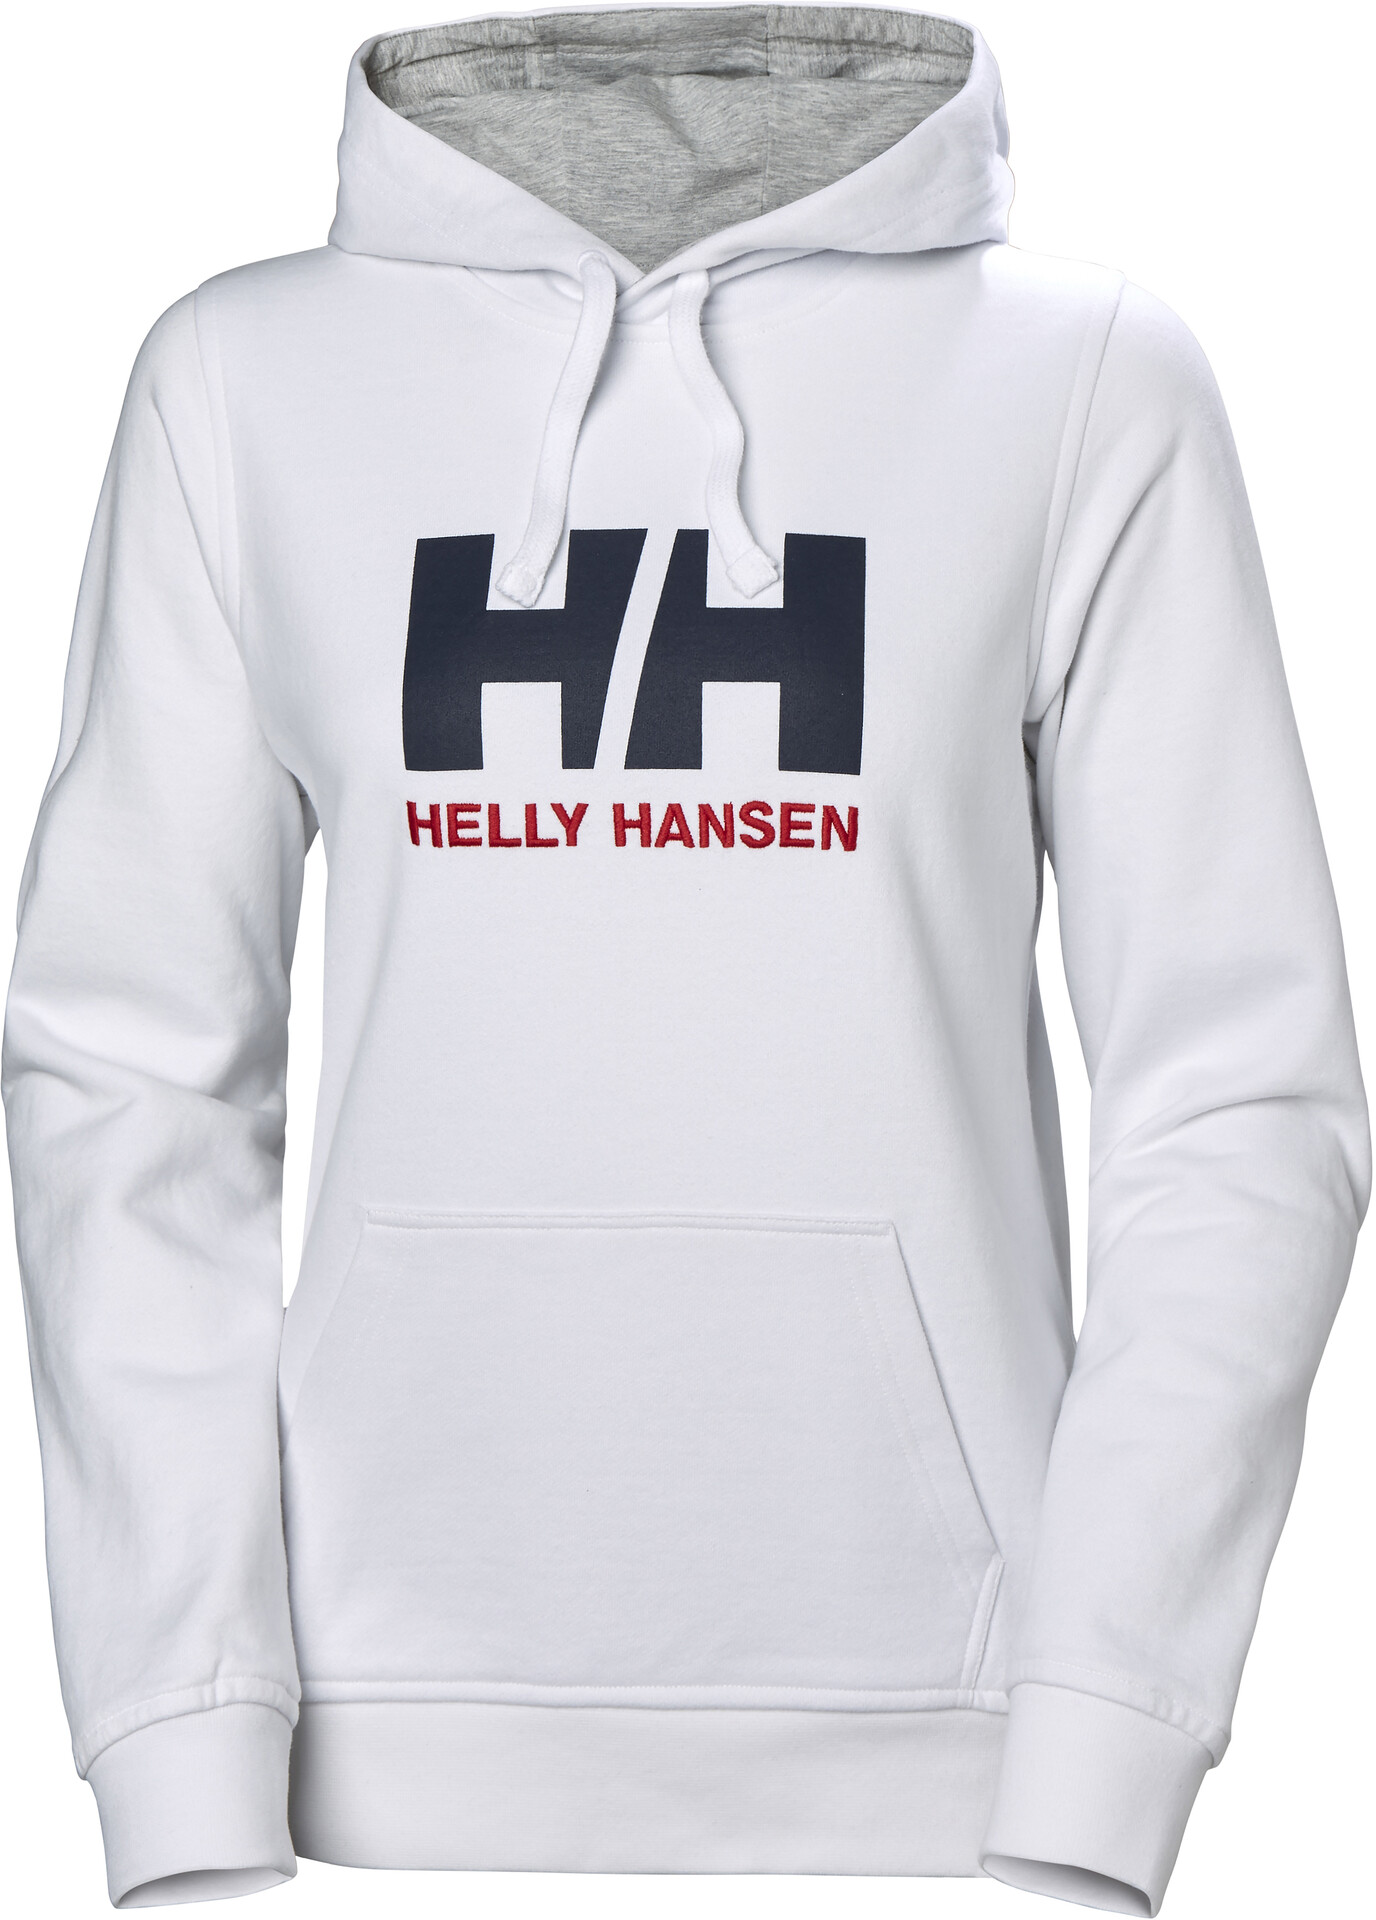 Helly Hansen HH Logo Sudadera Mujer, white | Campz.es